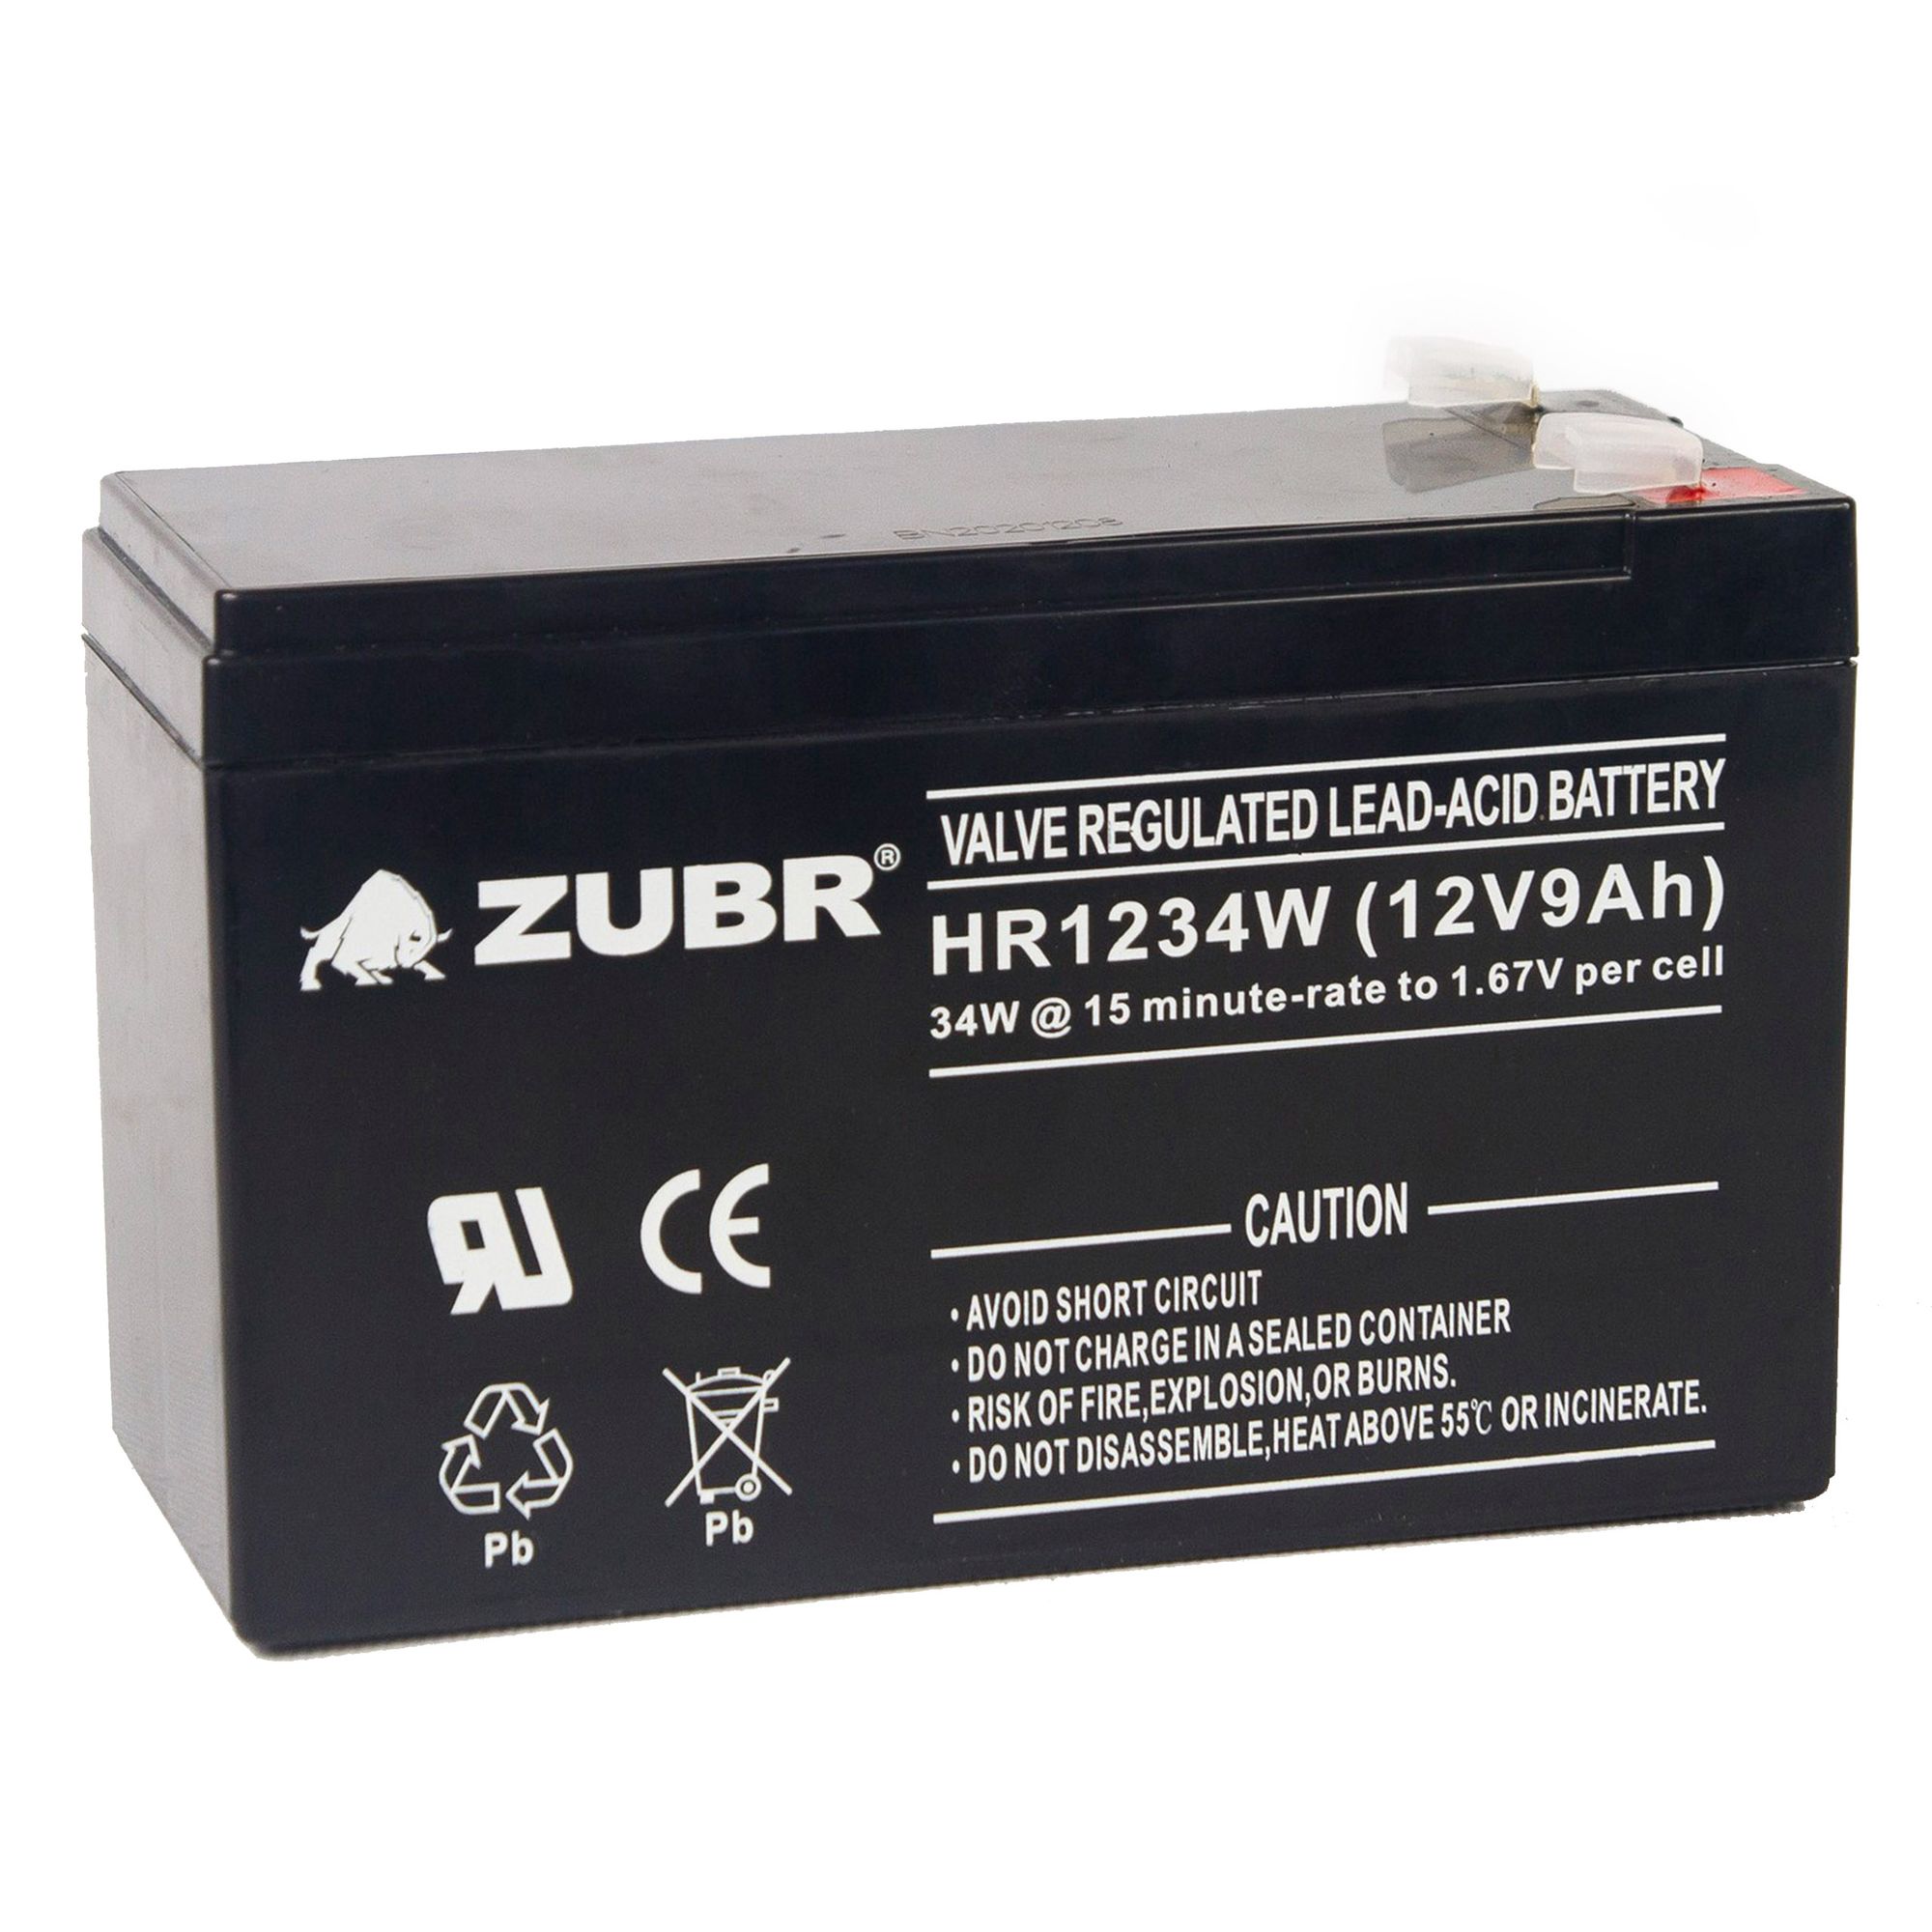 Батарея для ИБП ZUBR HR 1234 W (12V, 9Ah) (HR1234W) ventura аккумулятор hr1234w 12v 9ah 183679